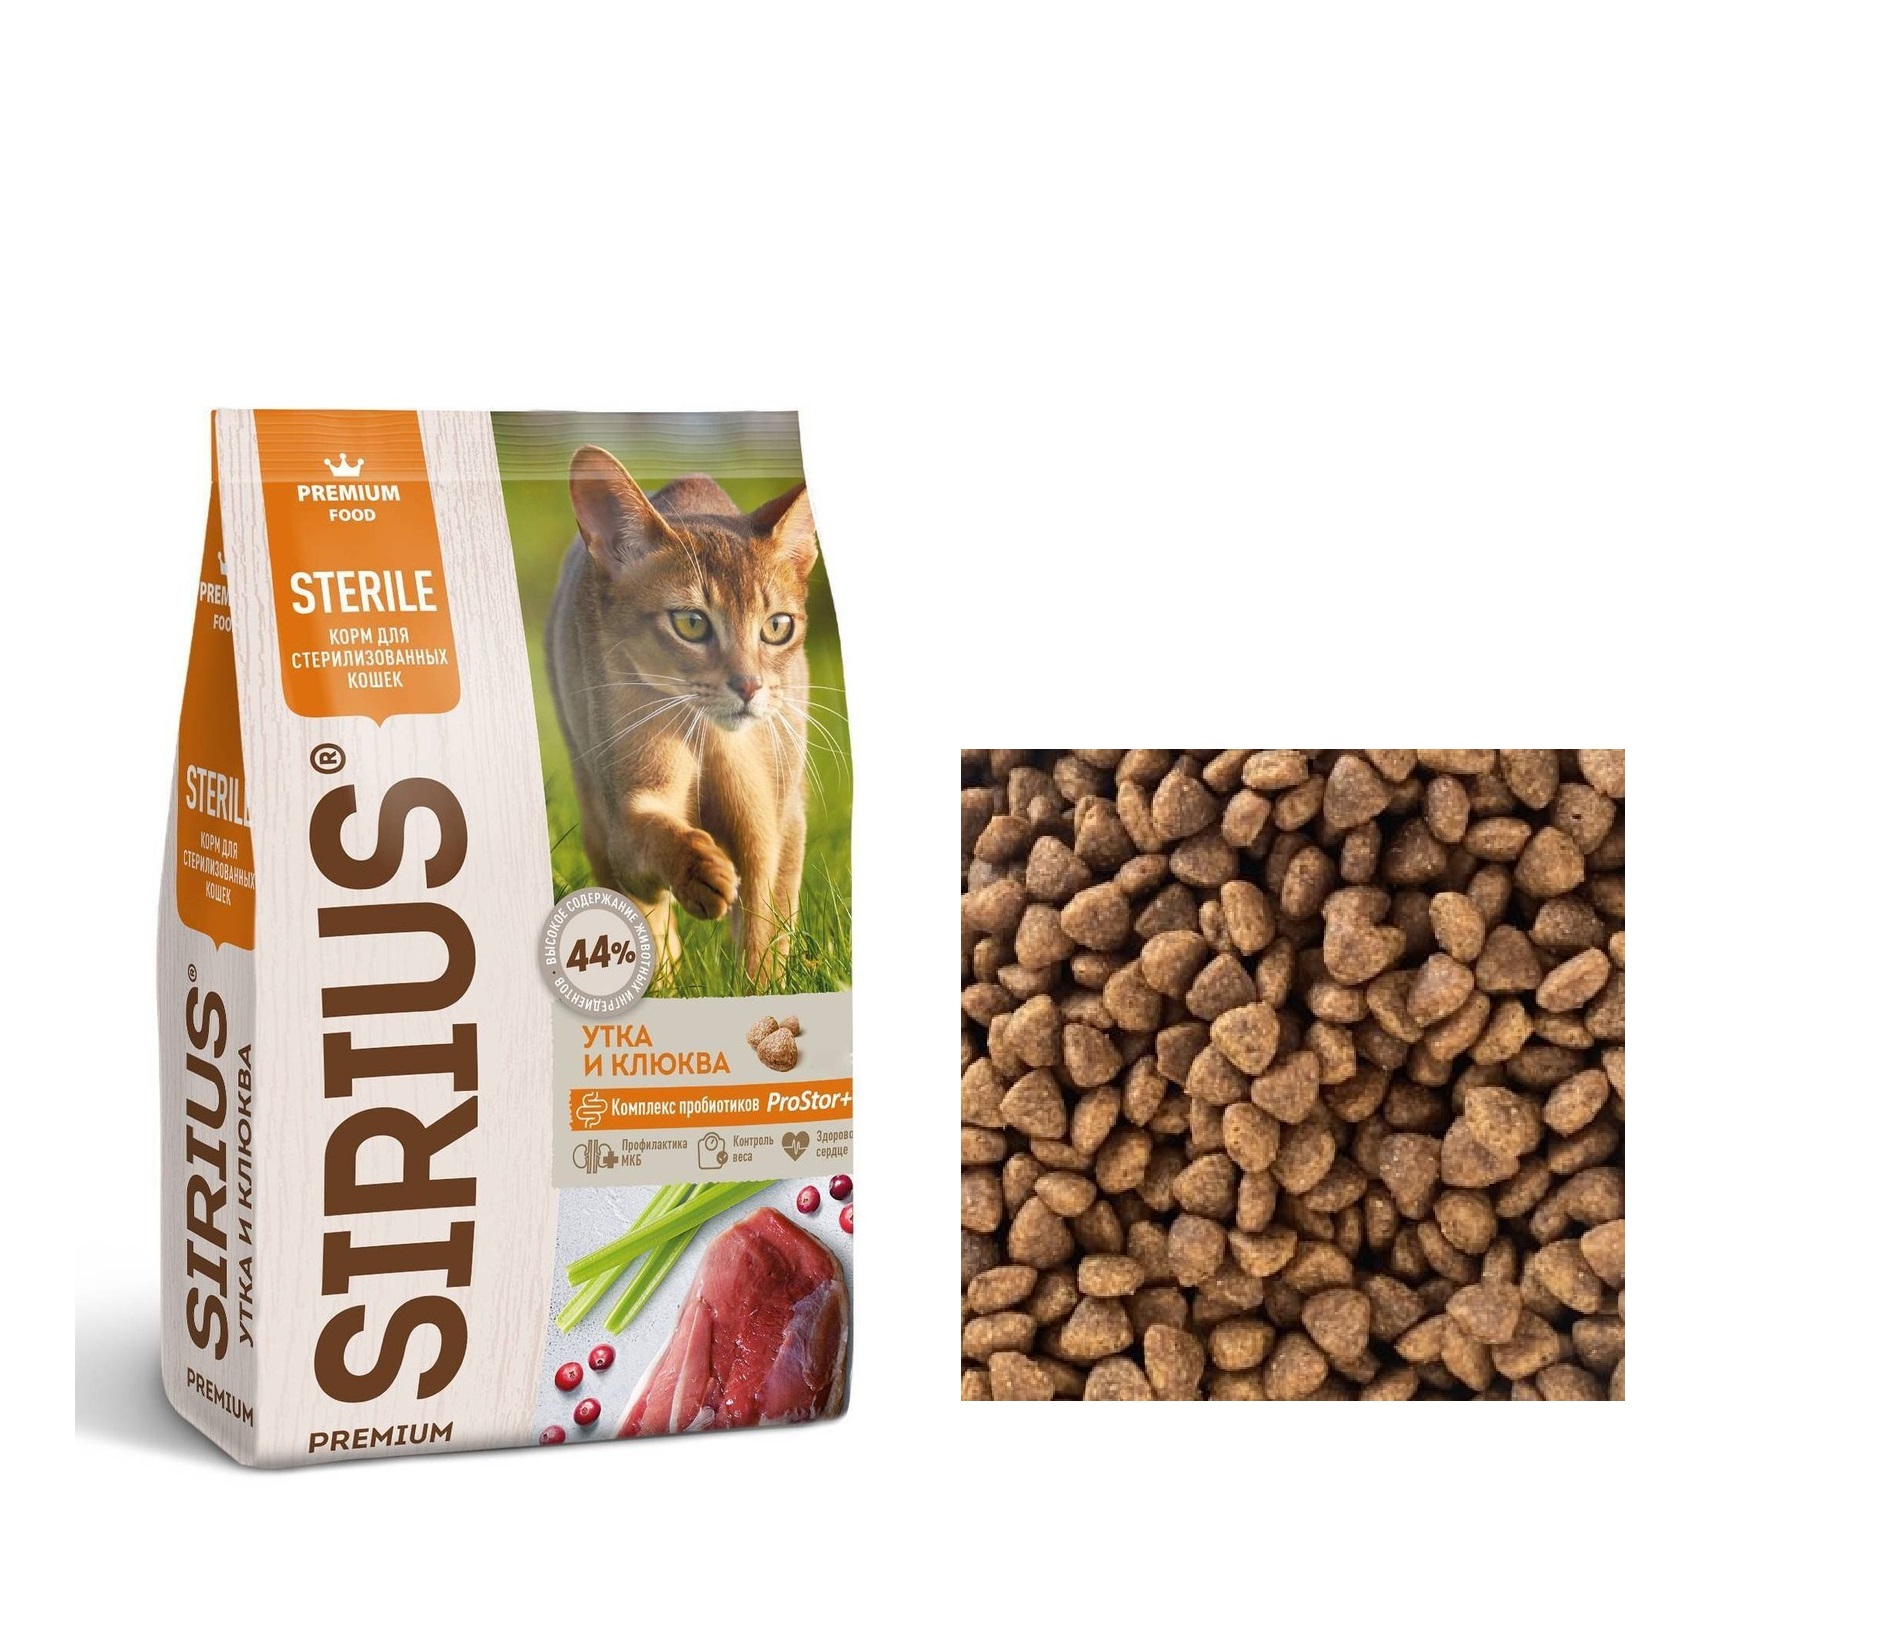 Сириус для кошек Стерилизованных Утка/Клюква (Sirius), весовой 1кг (Sirius)